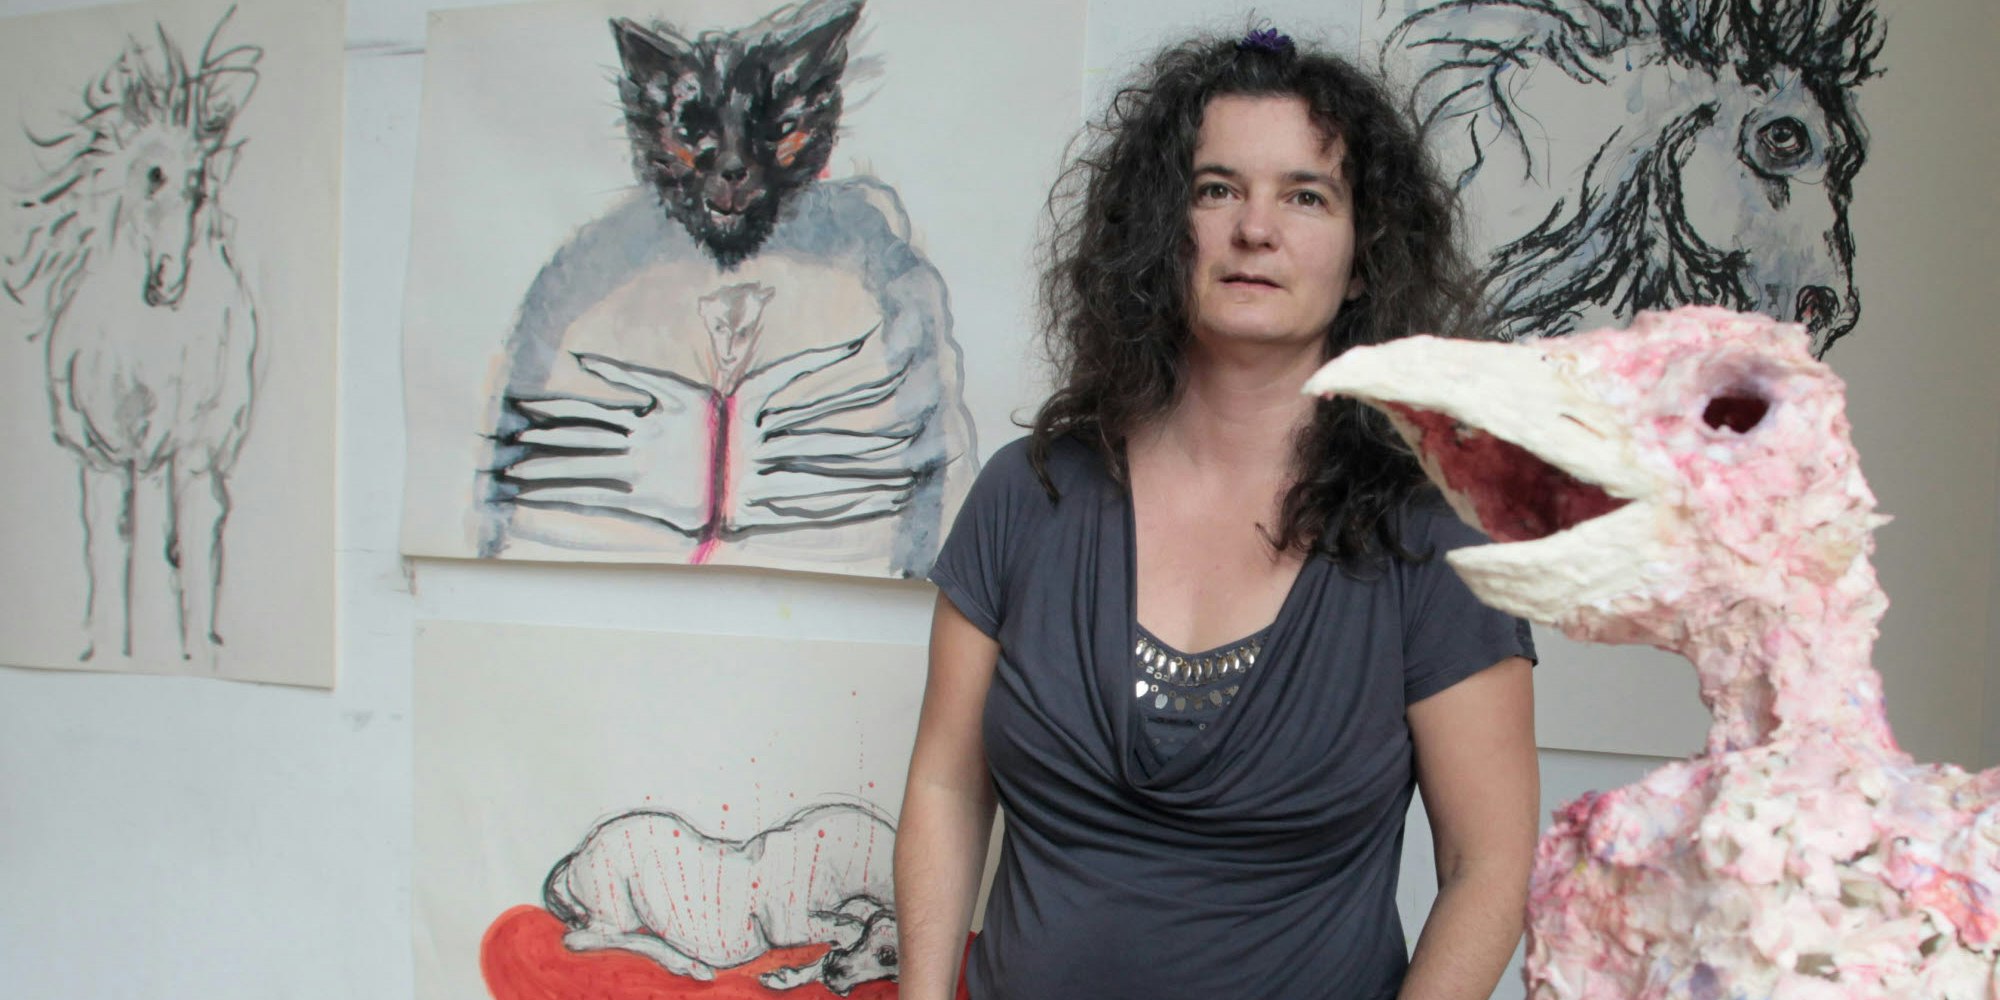 Künstlerin Saskia Niehaus pflegt eine körperbetonte erdverbundene Kunst, in der Mensch und Tier gleichberechtigt vorkommen.